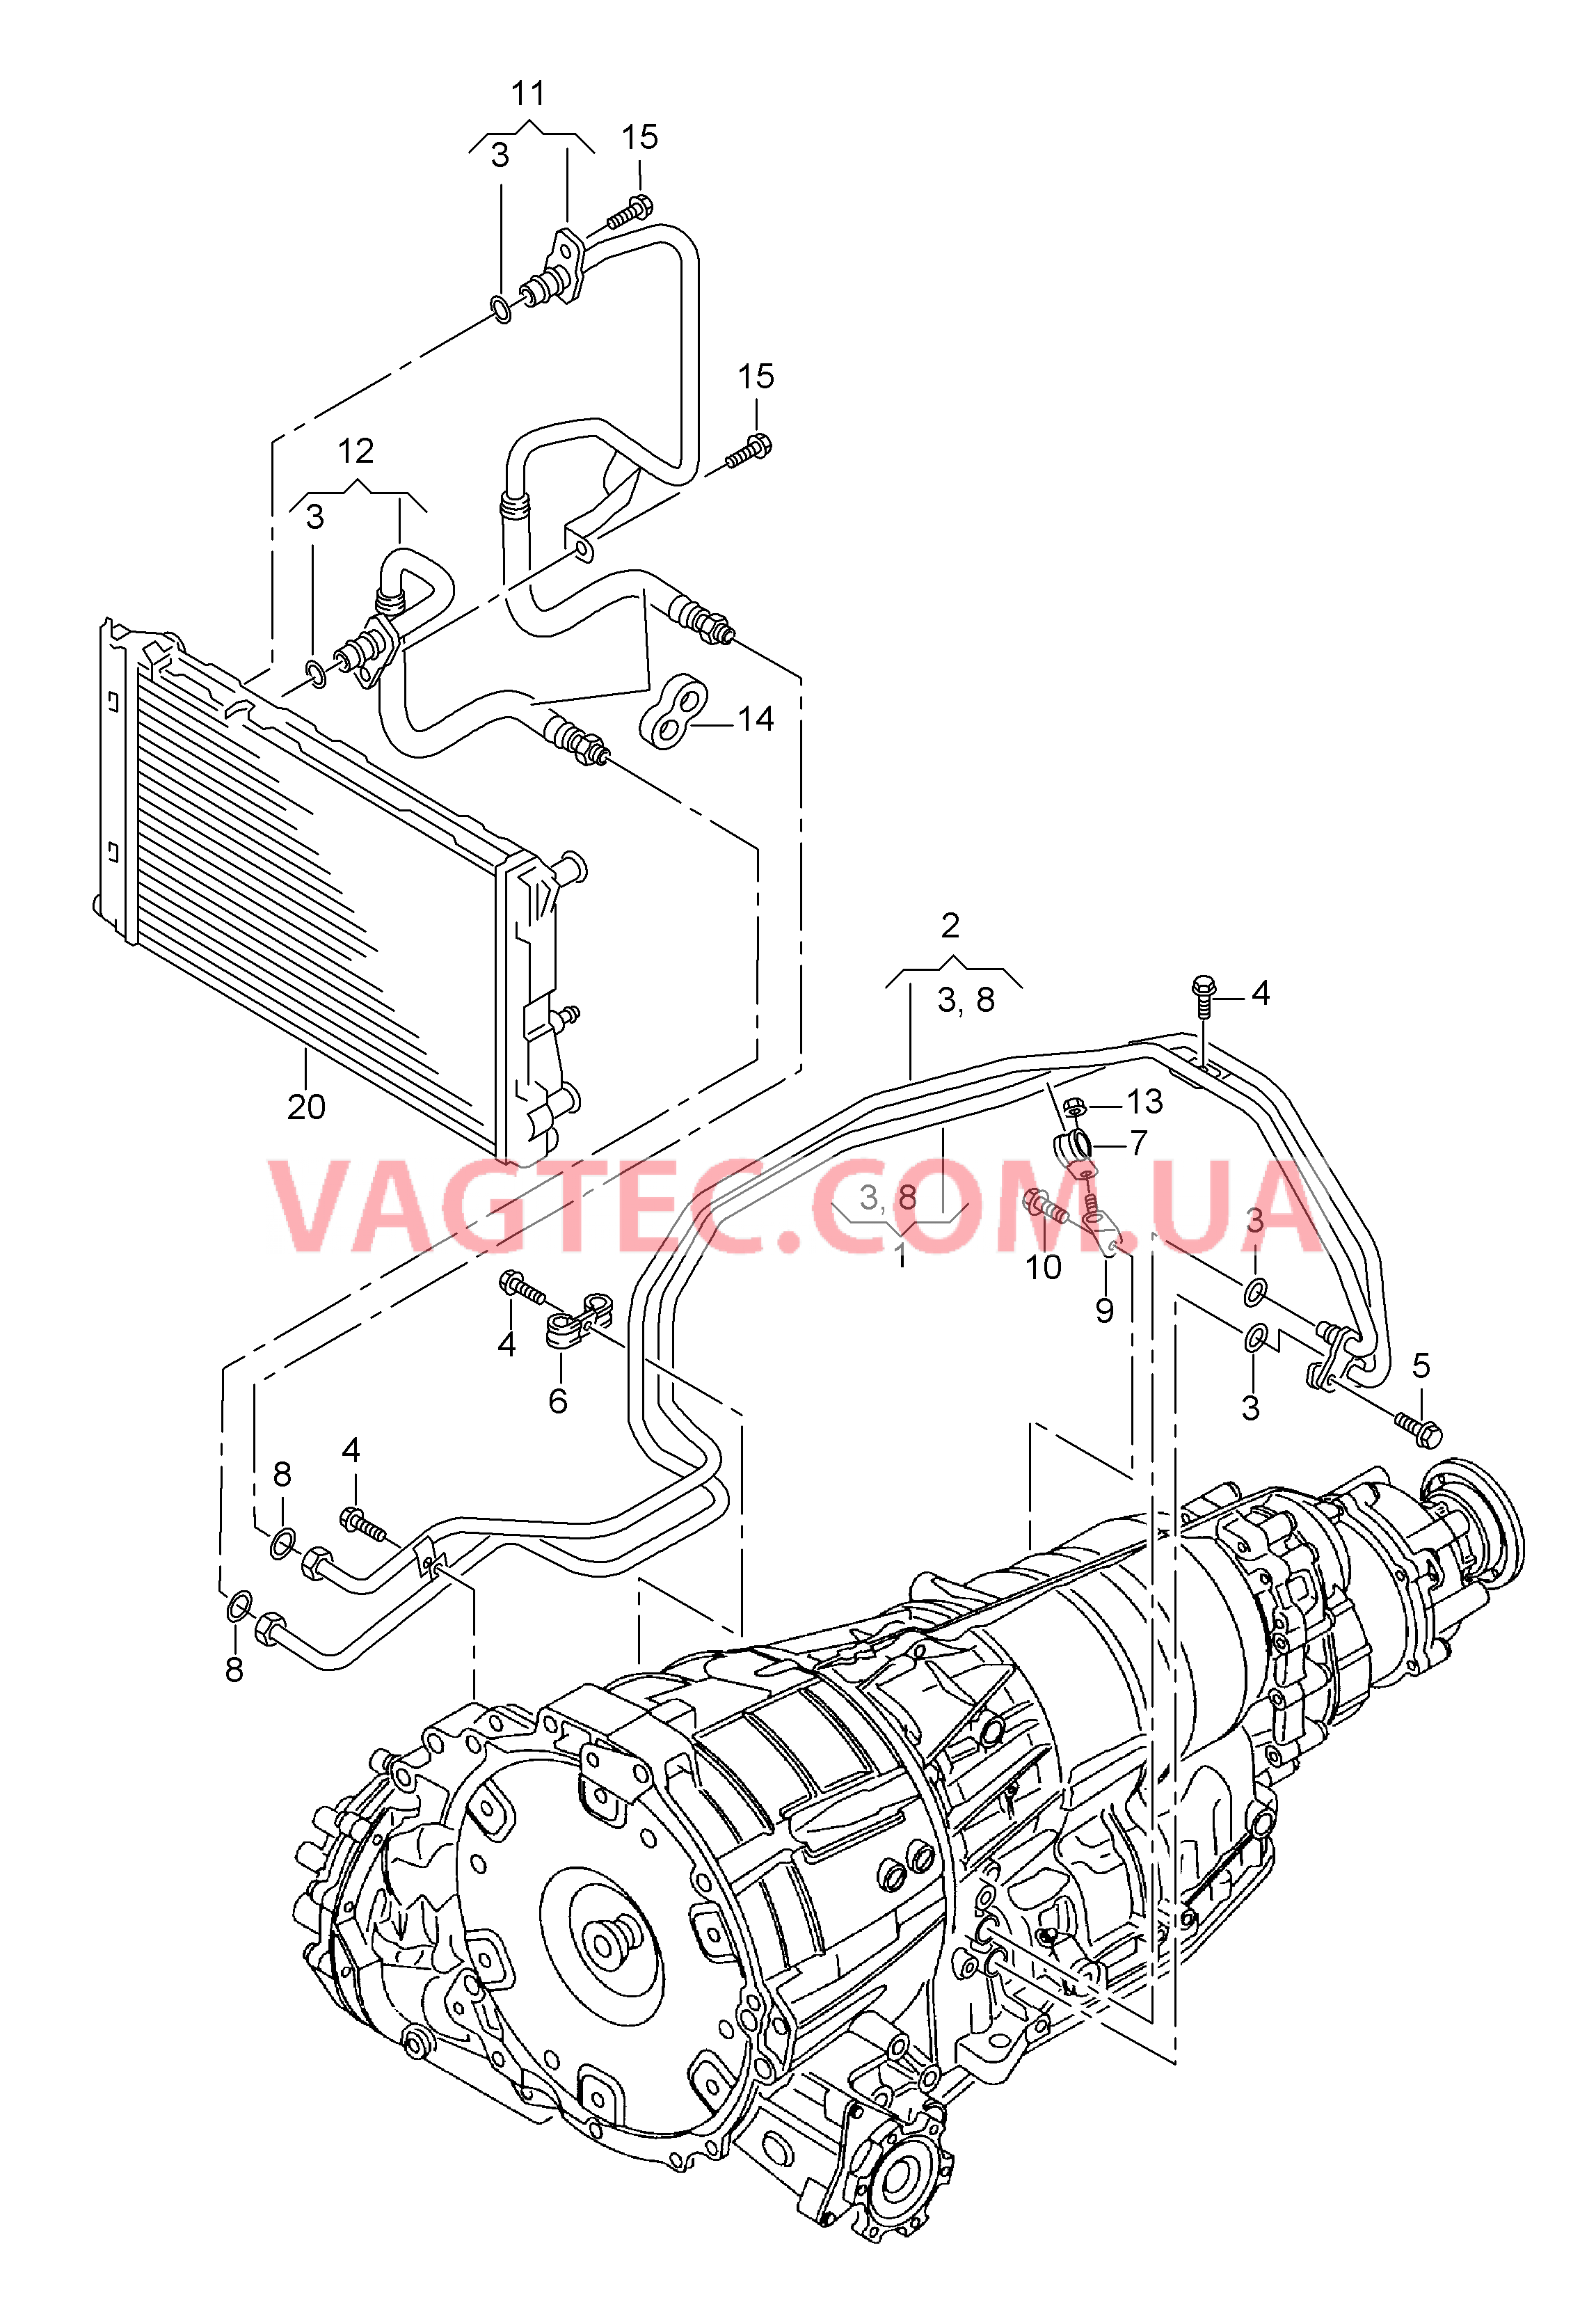 Напорный маслопровод для охлаждения масла коробки передач  8-ступенчатая АКП для а/м с гибридным приводом  для AUDI Q5 2016